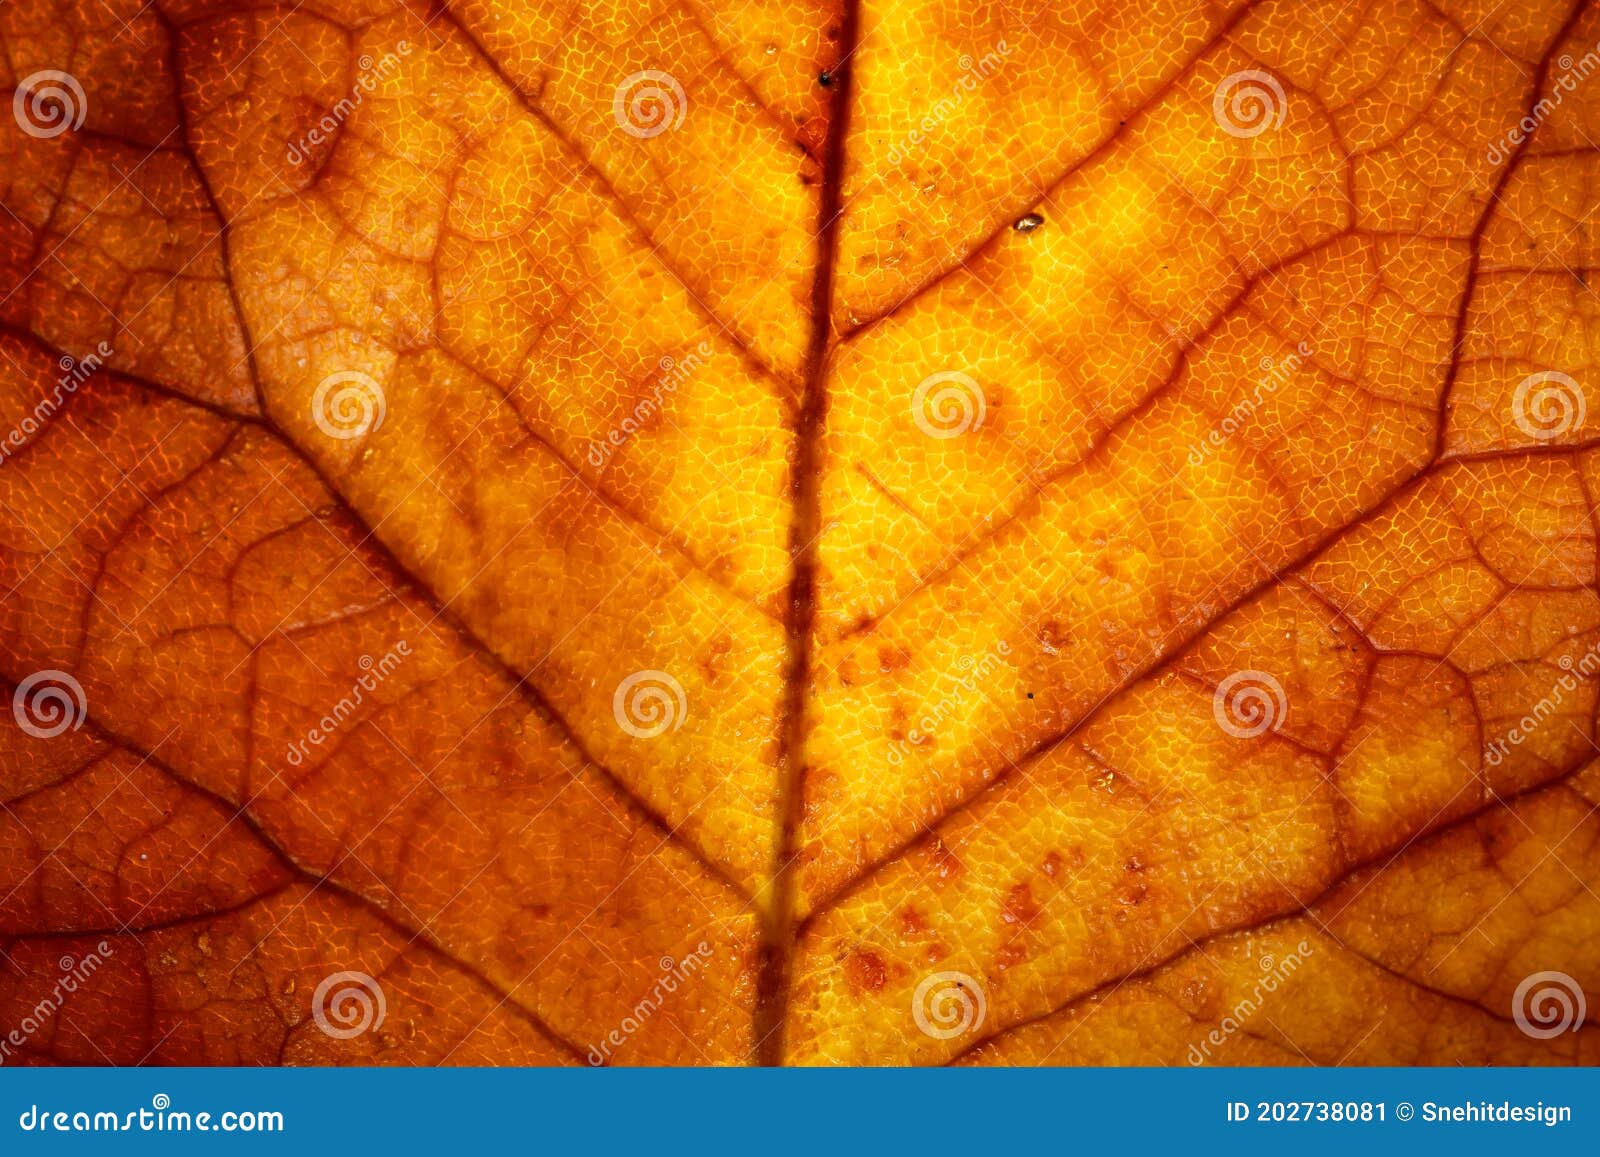 autumn leaf details with backlit lighting